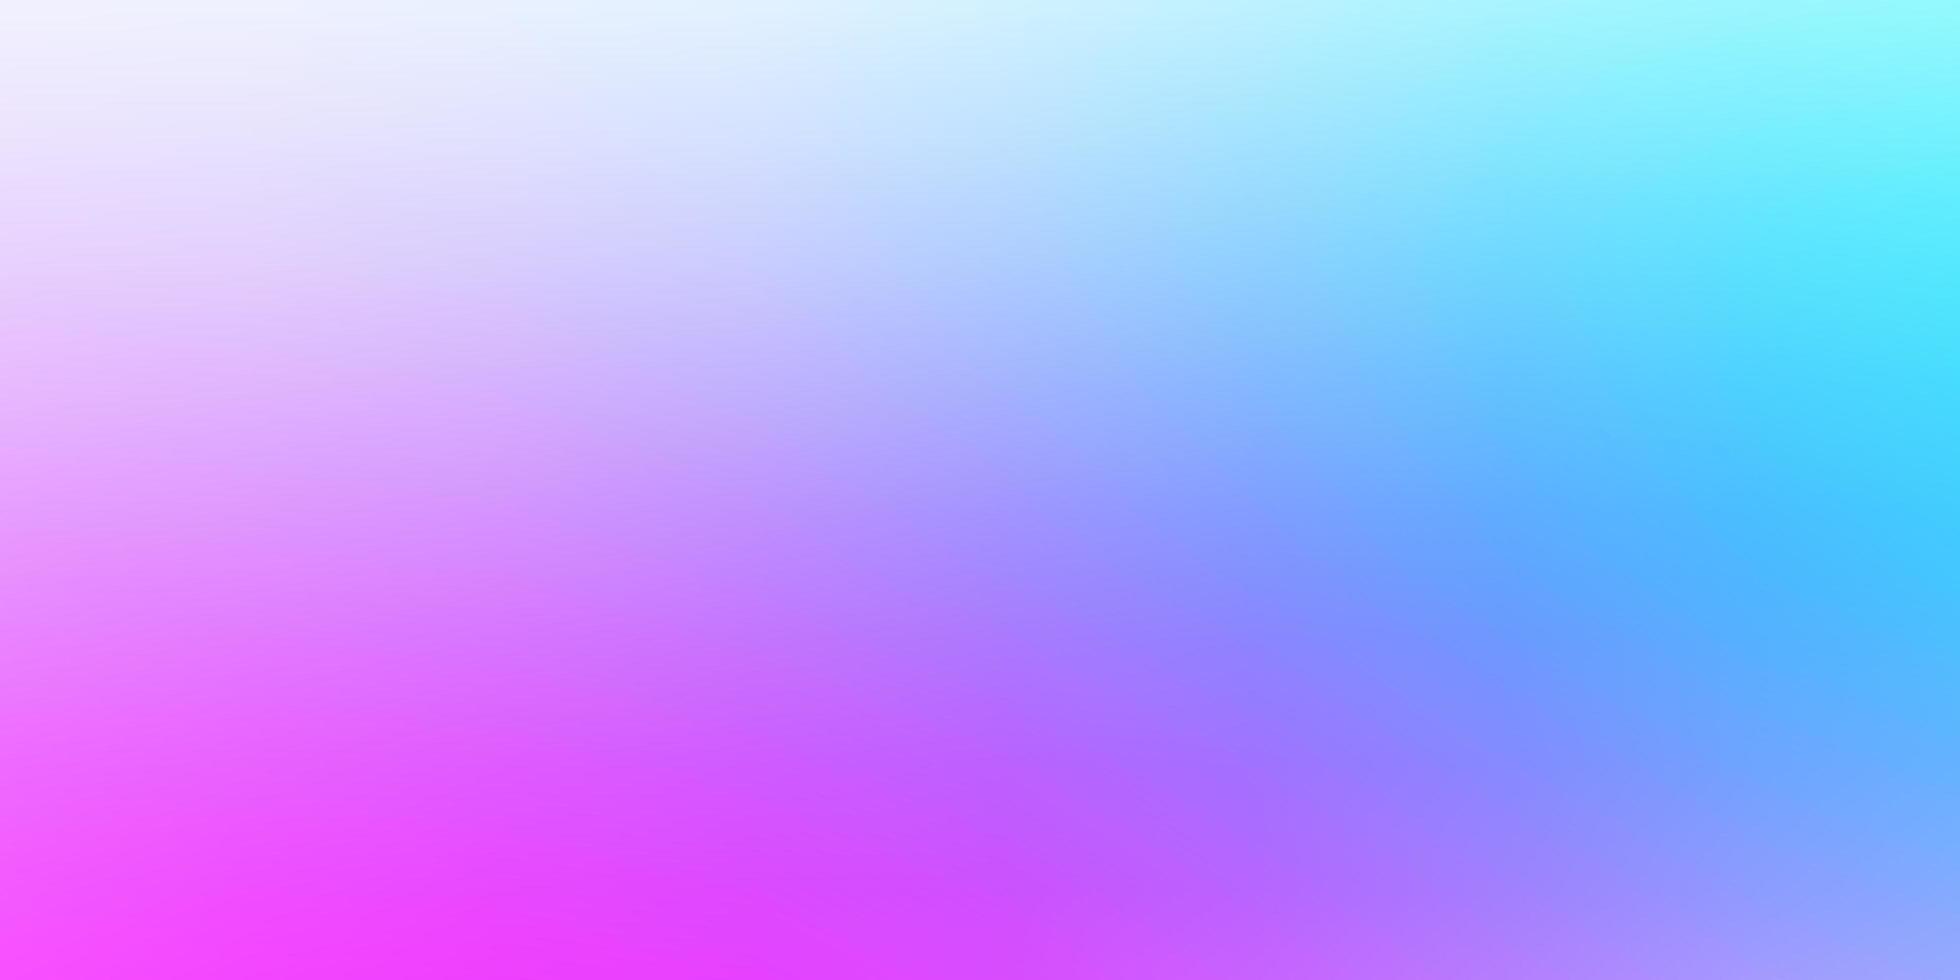 fundo desfocado abstrato do vetor rosa claro, azul.